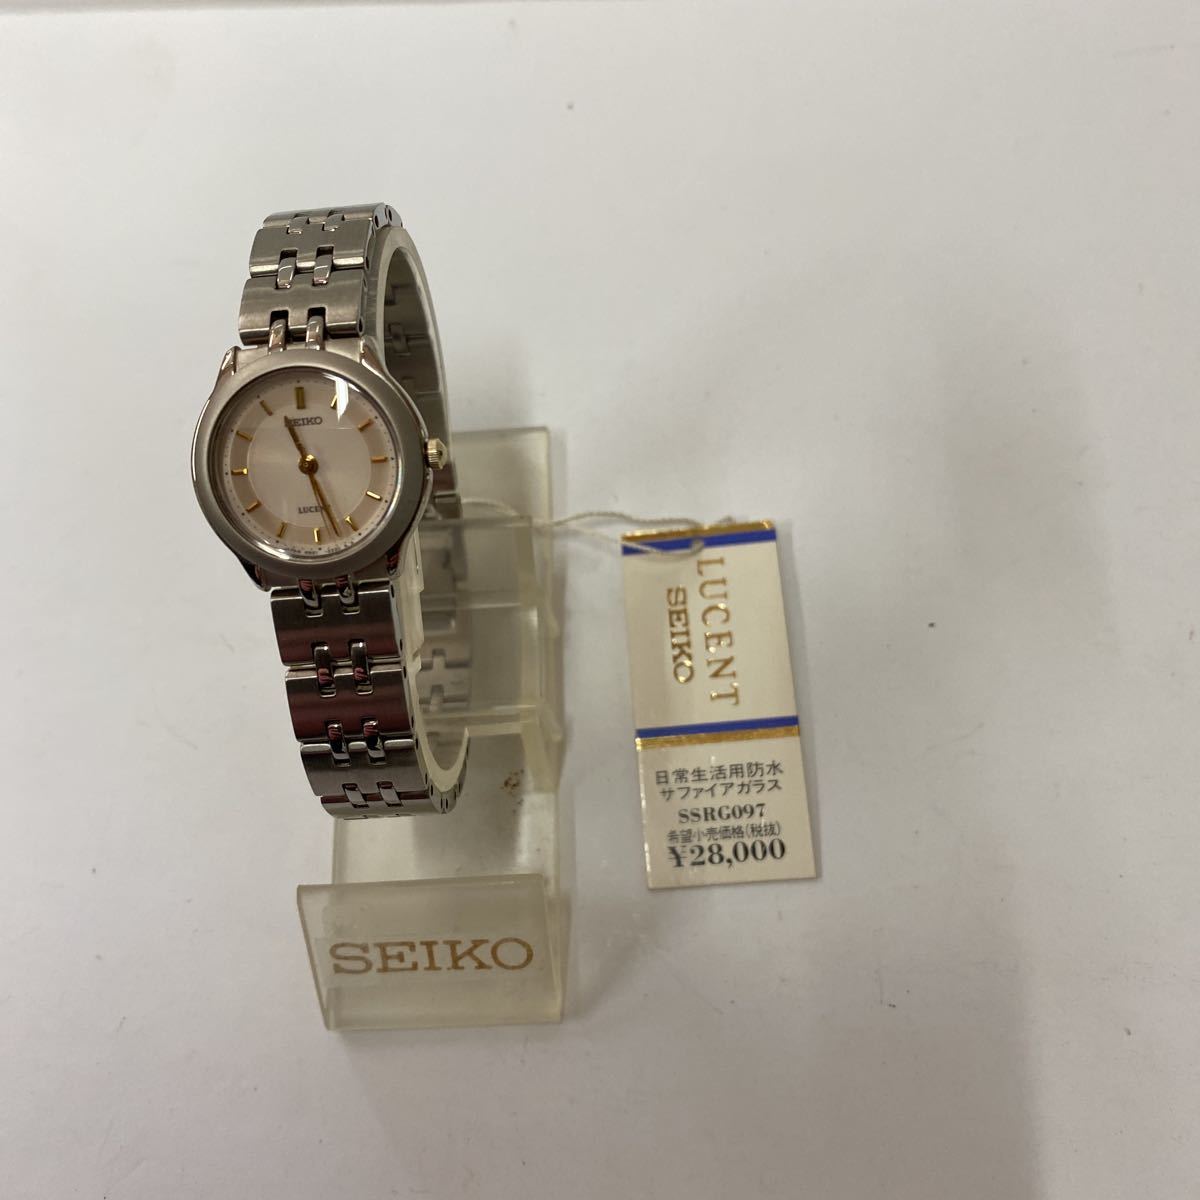 ［Ｅ-3]閉店した時計屋さんから出た片付け物 SEIKO/セイコールーセント デッドストック品(未使用品)